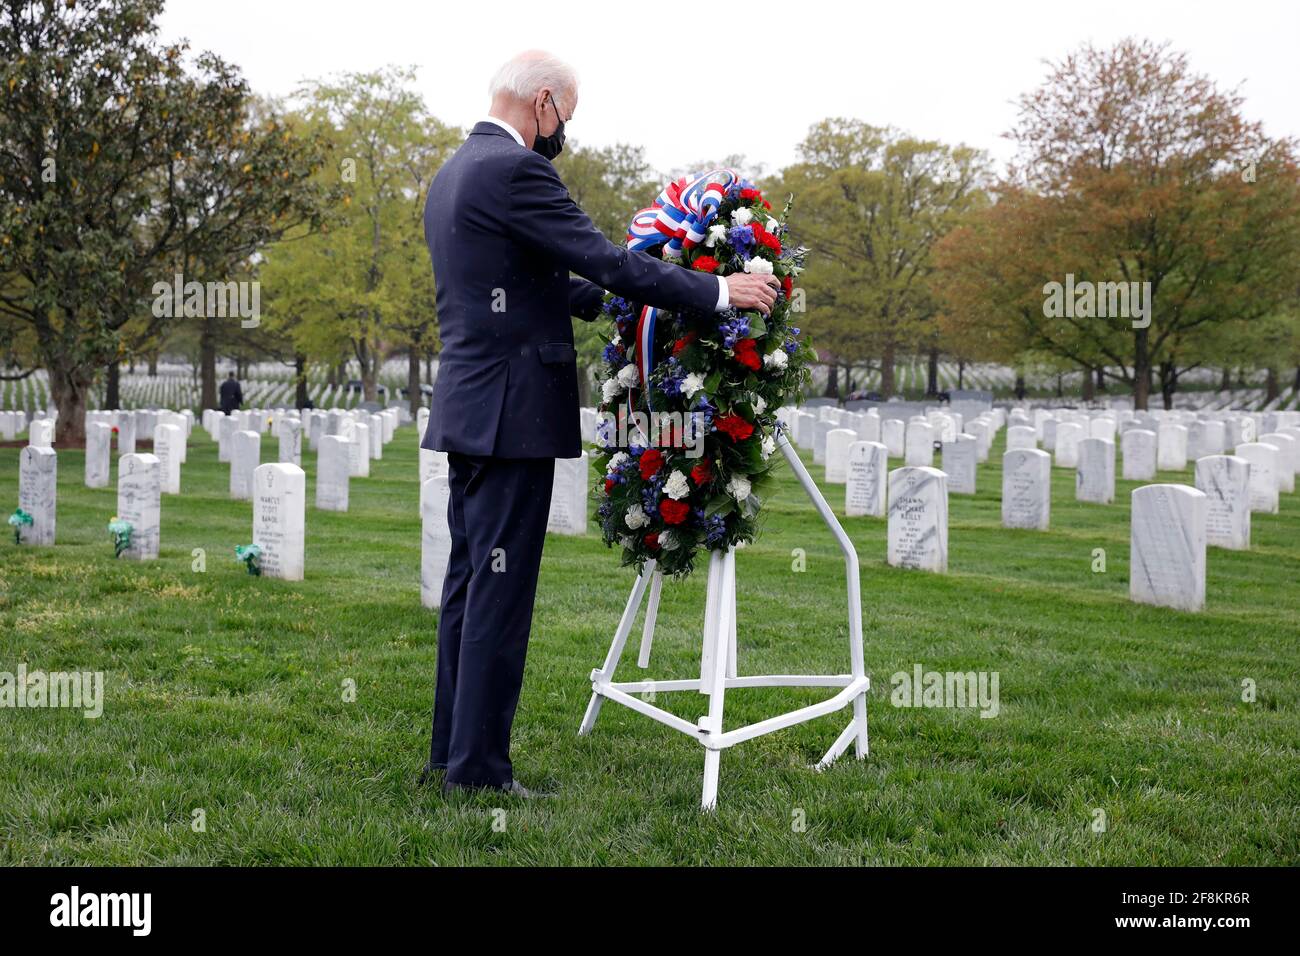 Washington, USA. April 2021. US-Präsident Joe Biden legt einen Kranz auf, als er am 14. April 2021 die Sektion 60 auf dem Arlington National Cemetery in Washington besucht. Foto von Yuri Gripas/Pool/Sipa USA Quelle: SIPA USA/Alamy Live News Stockfoto